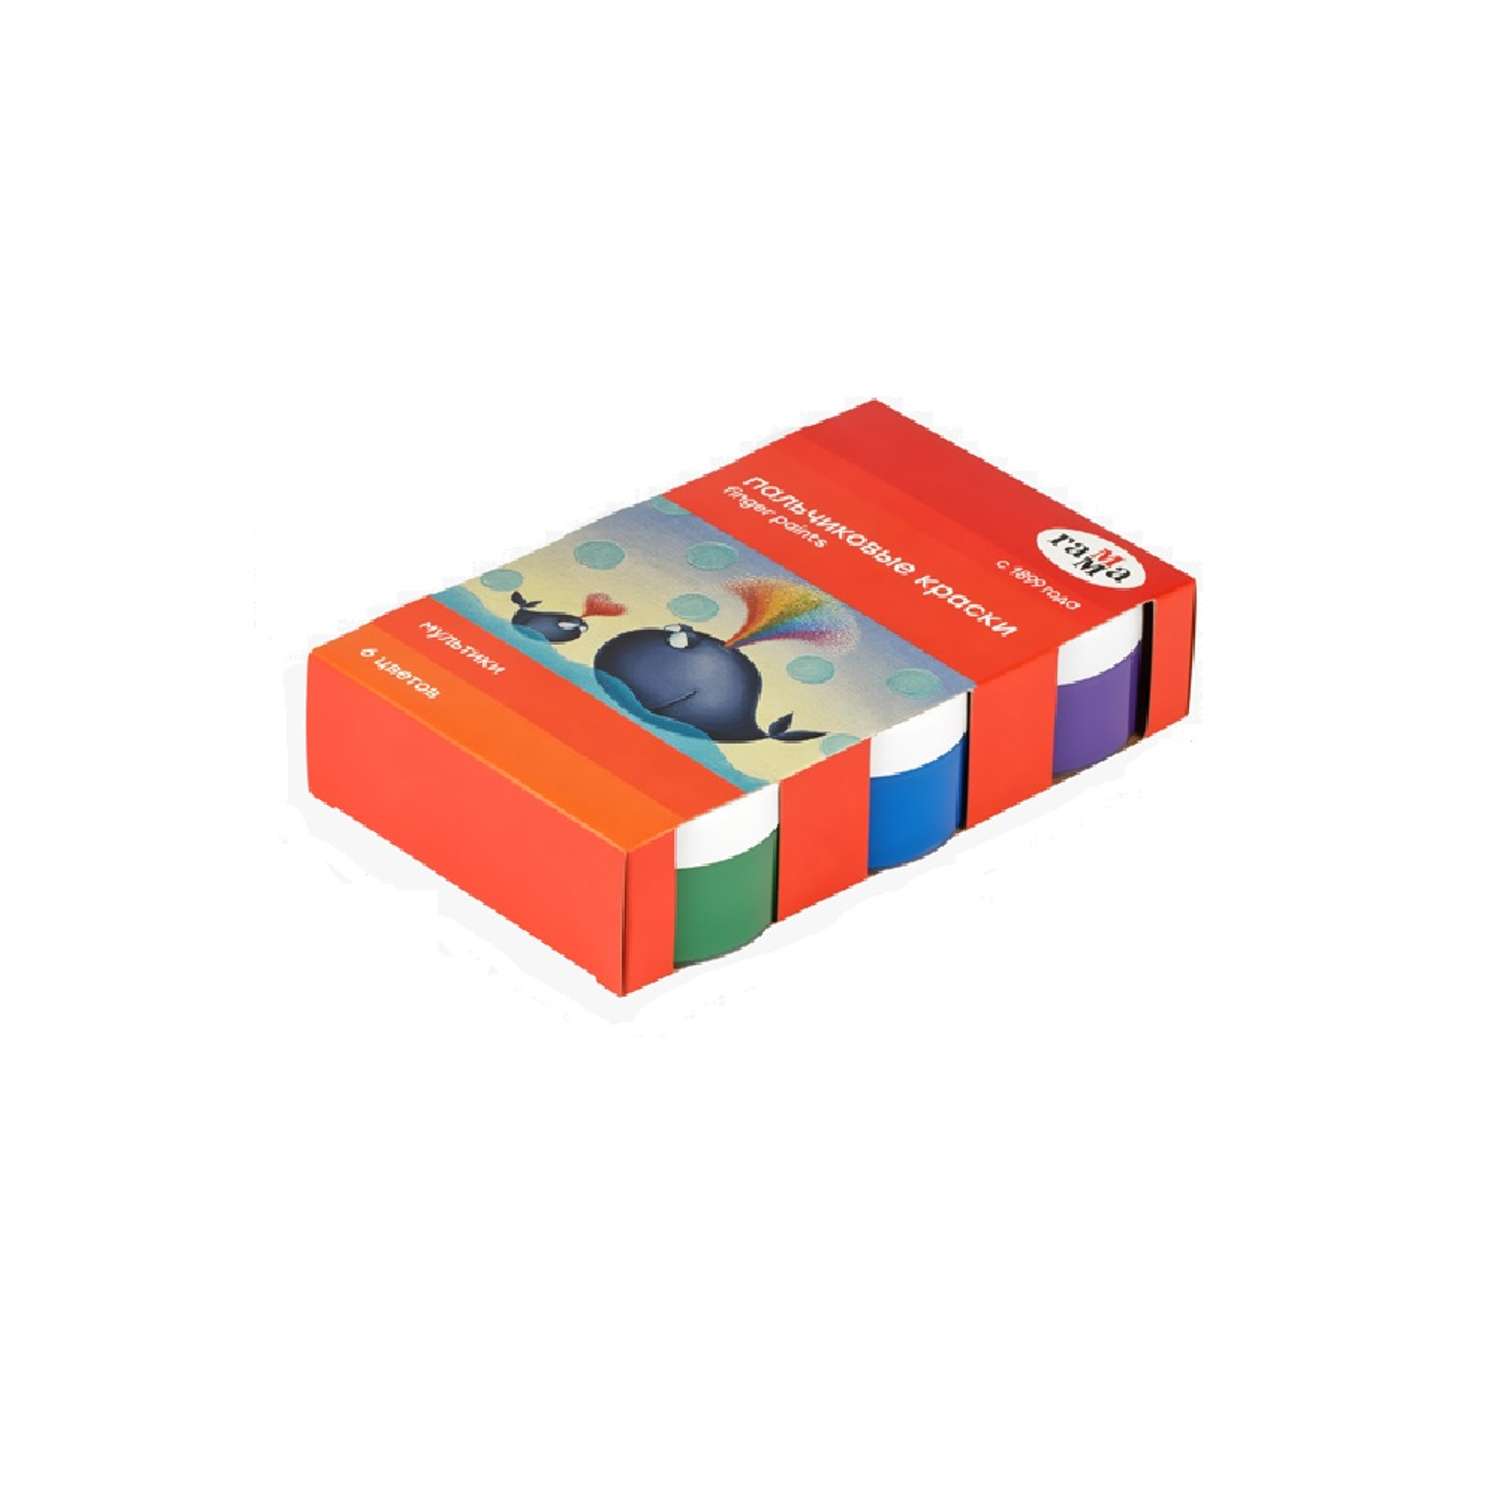 Краски пальчиковые Гамма Мультики классические 6 цветов 50 мл картон упаковка - фото 1